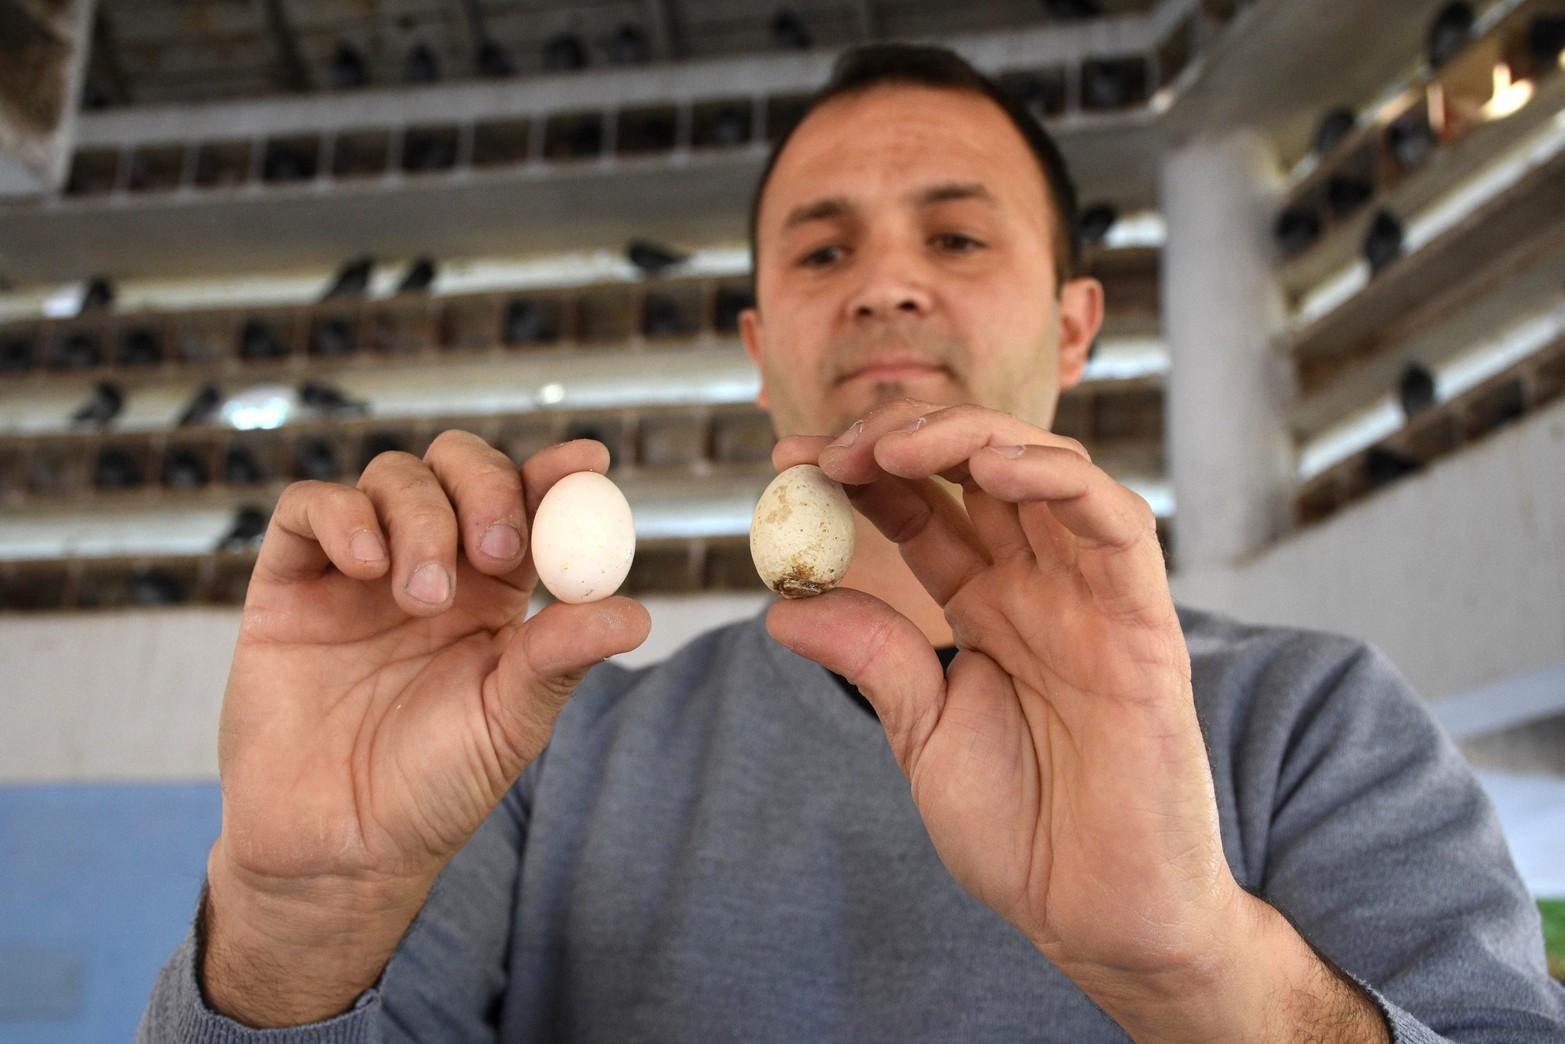 Método inédito en el Palomar. Huevos fértiles se sustituyen por otros de yeso para controlar la población de palomas. Con esta medida se hacía un “control ético” de las aves.